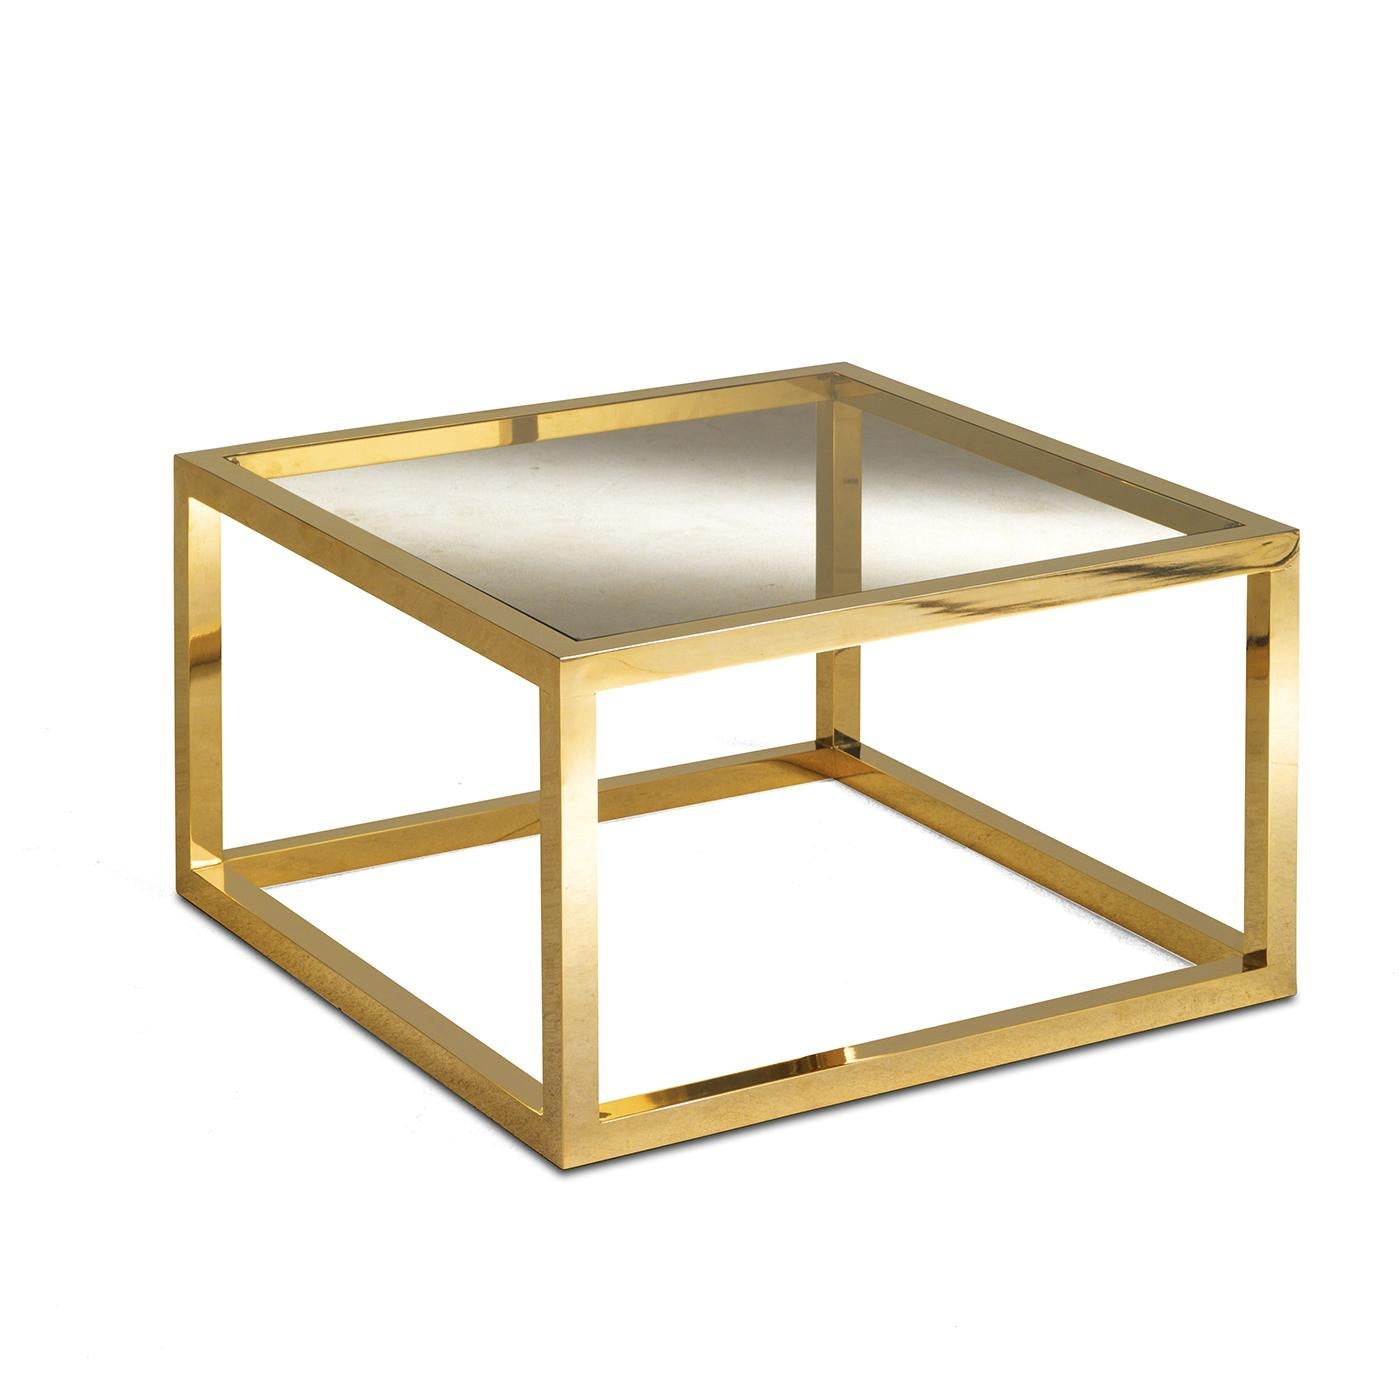 Exercice de minimalisme élégant, cette table basse présente une base carrée d'où partent quatre pieds courts qui soutiennent un plateau carré. Toute la structure est en laiton, tandis que le plateau est en verre avec une finition bronzée. Simple et